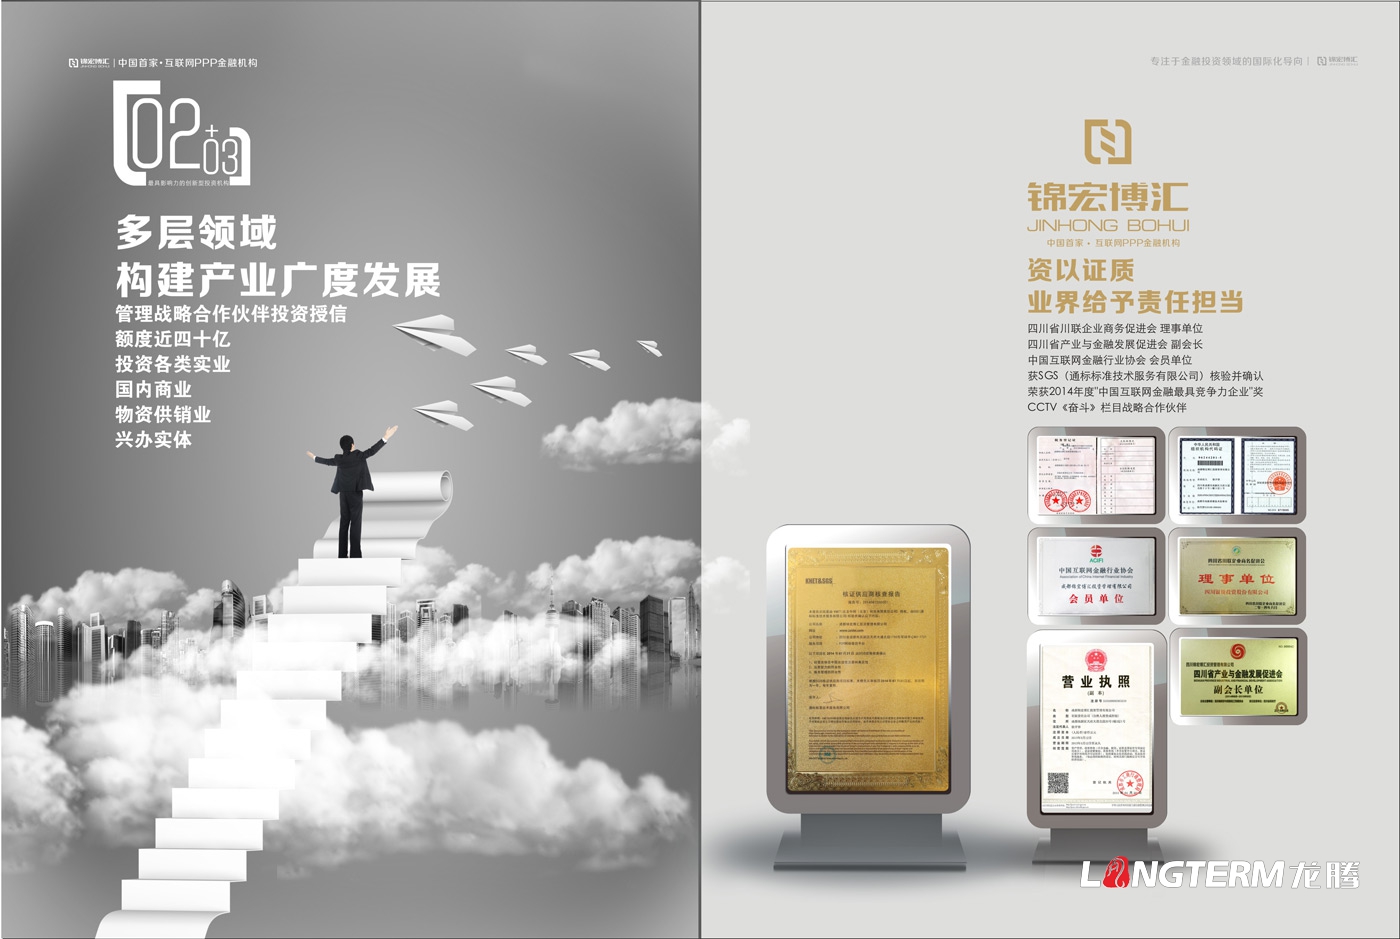 锦宏博汇投资管理公司电子画册设计